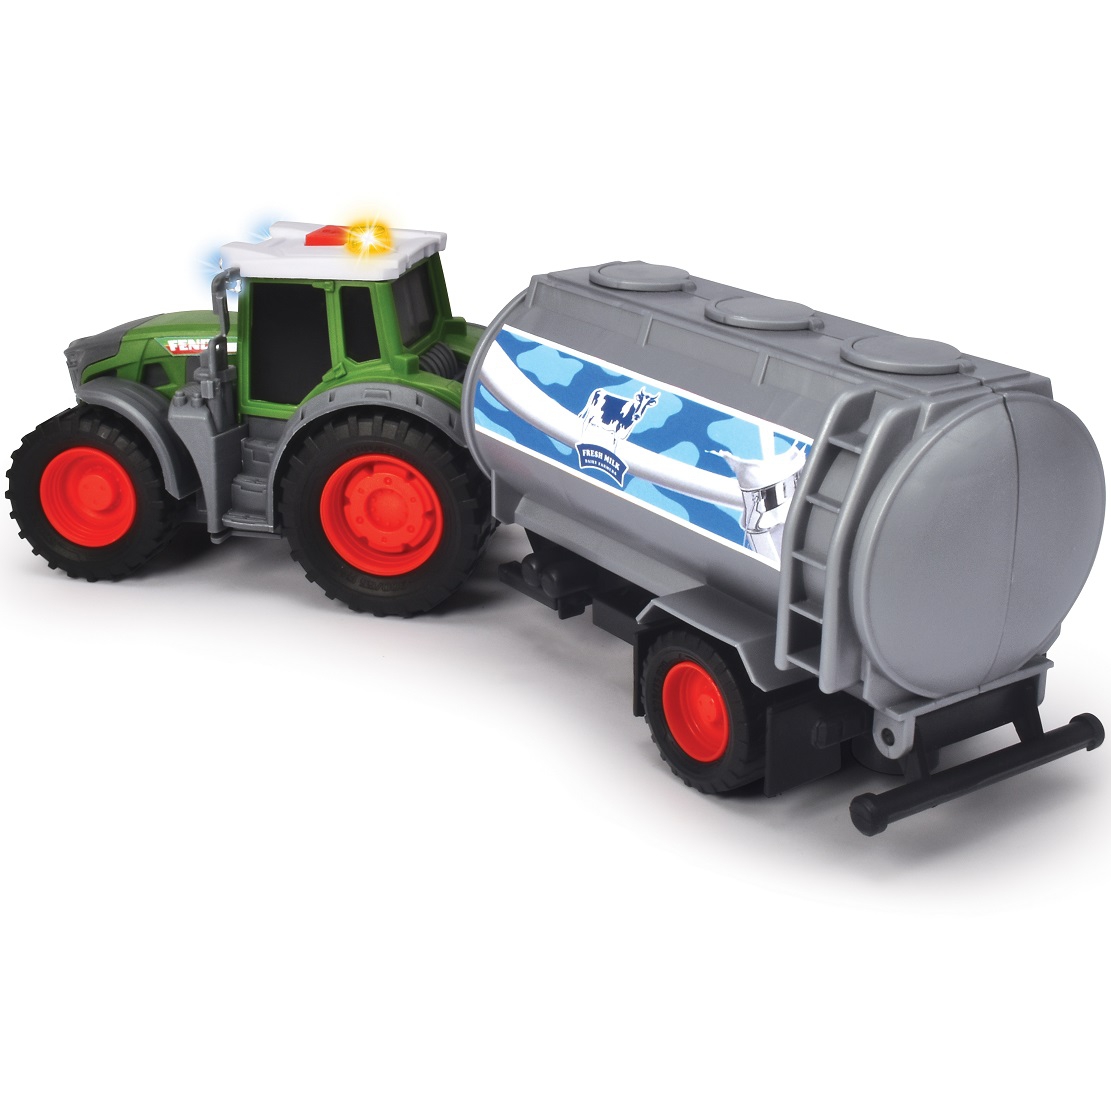 Farm traktor Fendt + cysterna na mleko, zabawka dla dzieci, Dickie